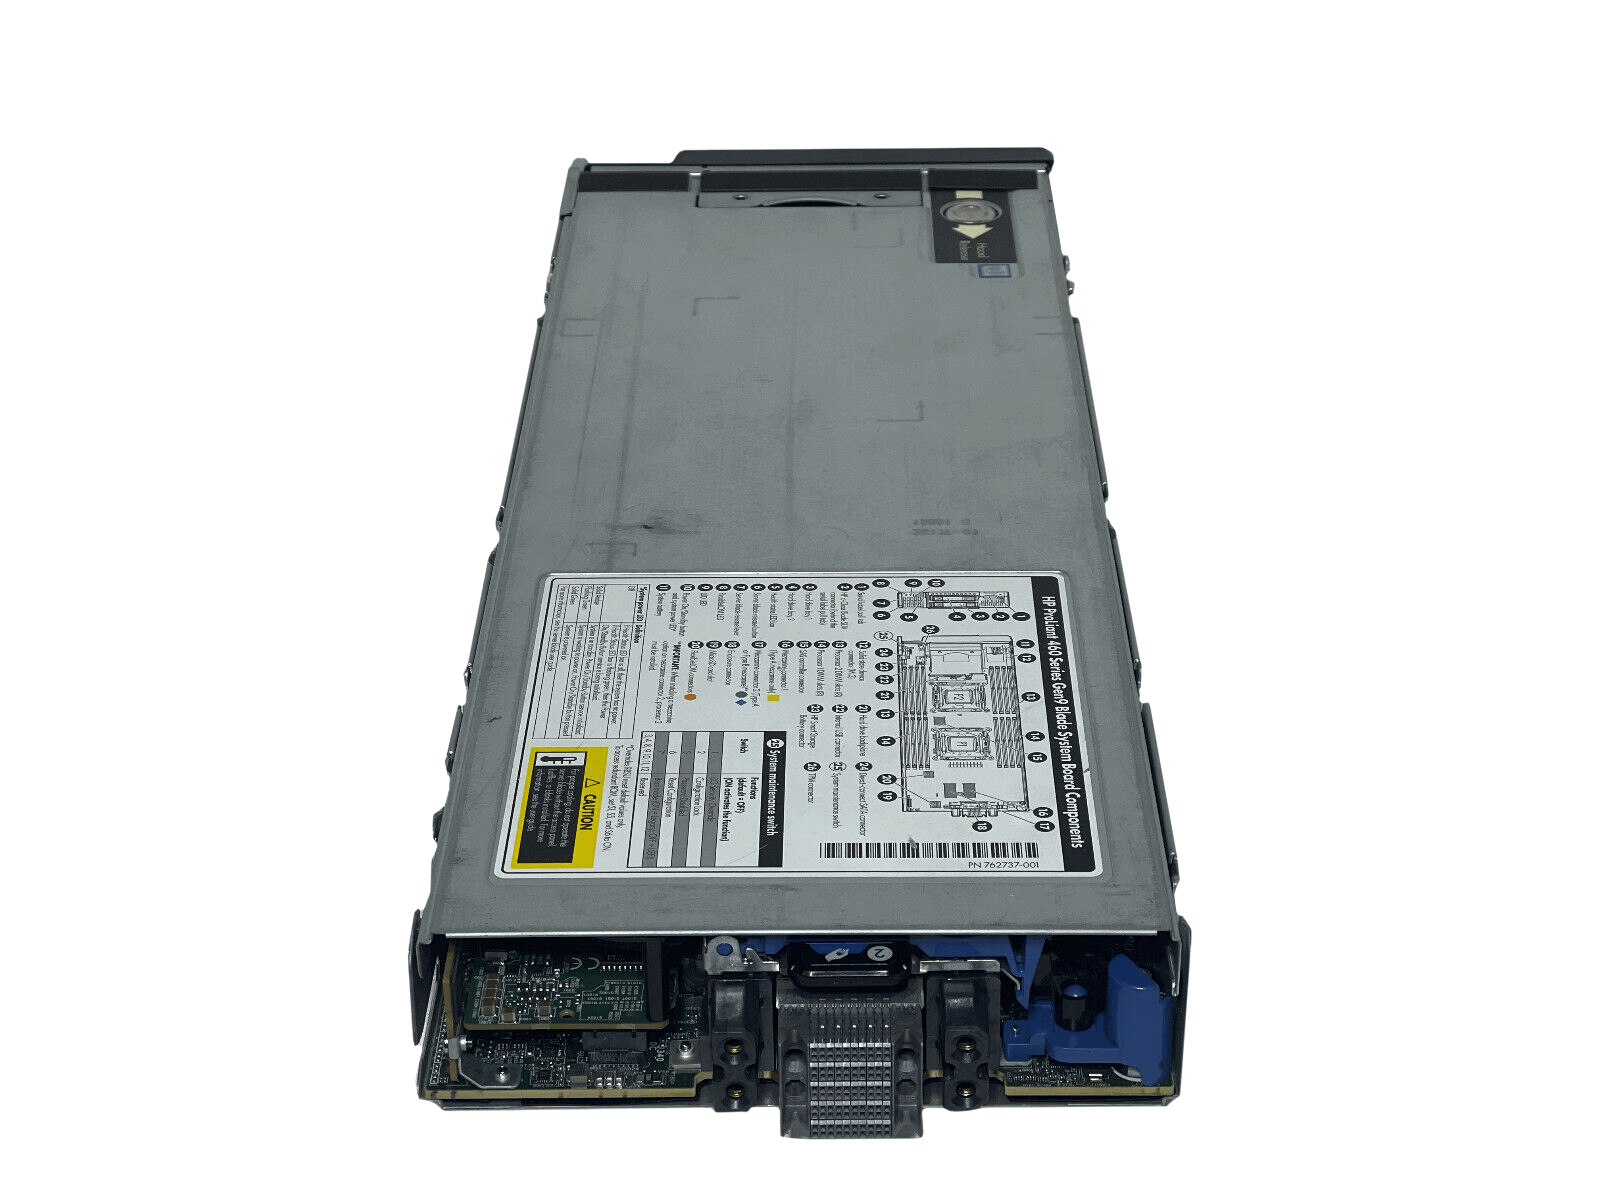 HPE BL460c Gen9 Blade Server 2SFF 2x 12C E5-2670 v3 512GB P244br 630FLB 10GbE.